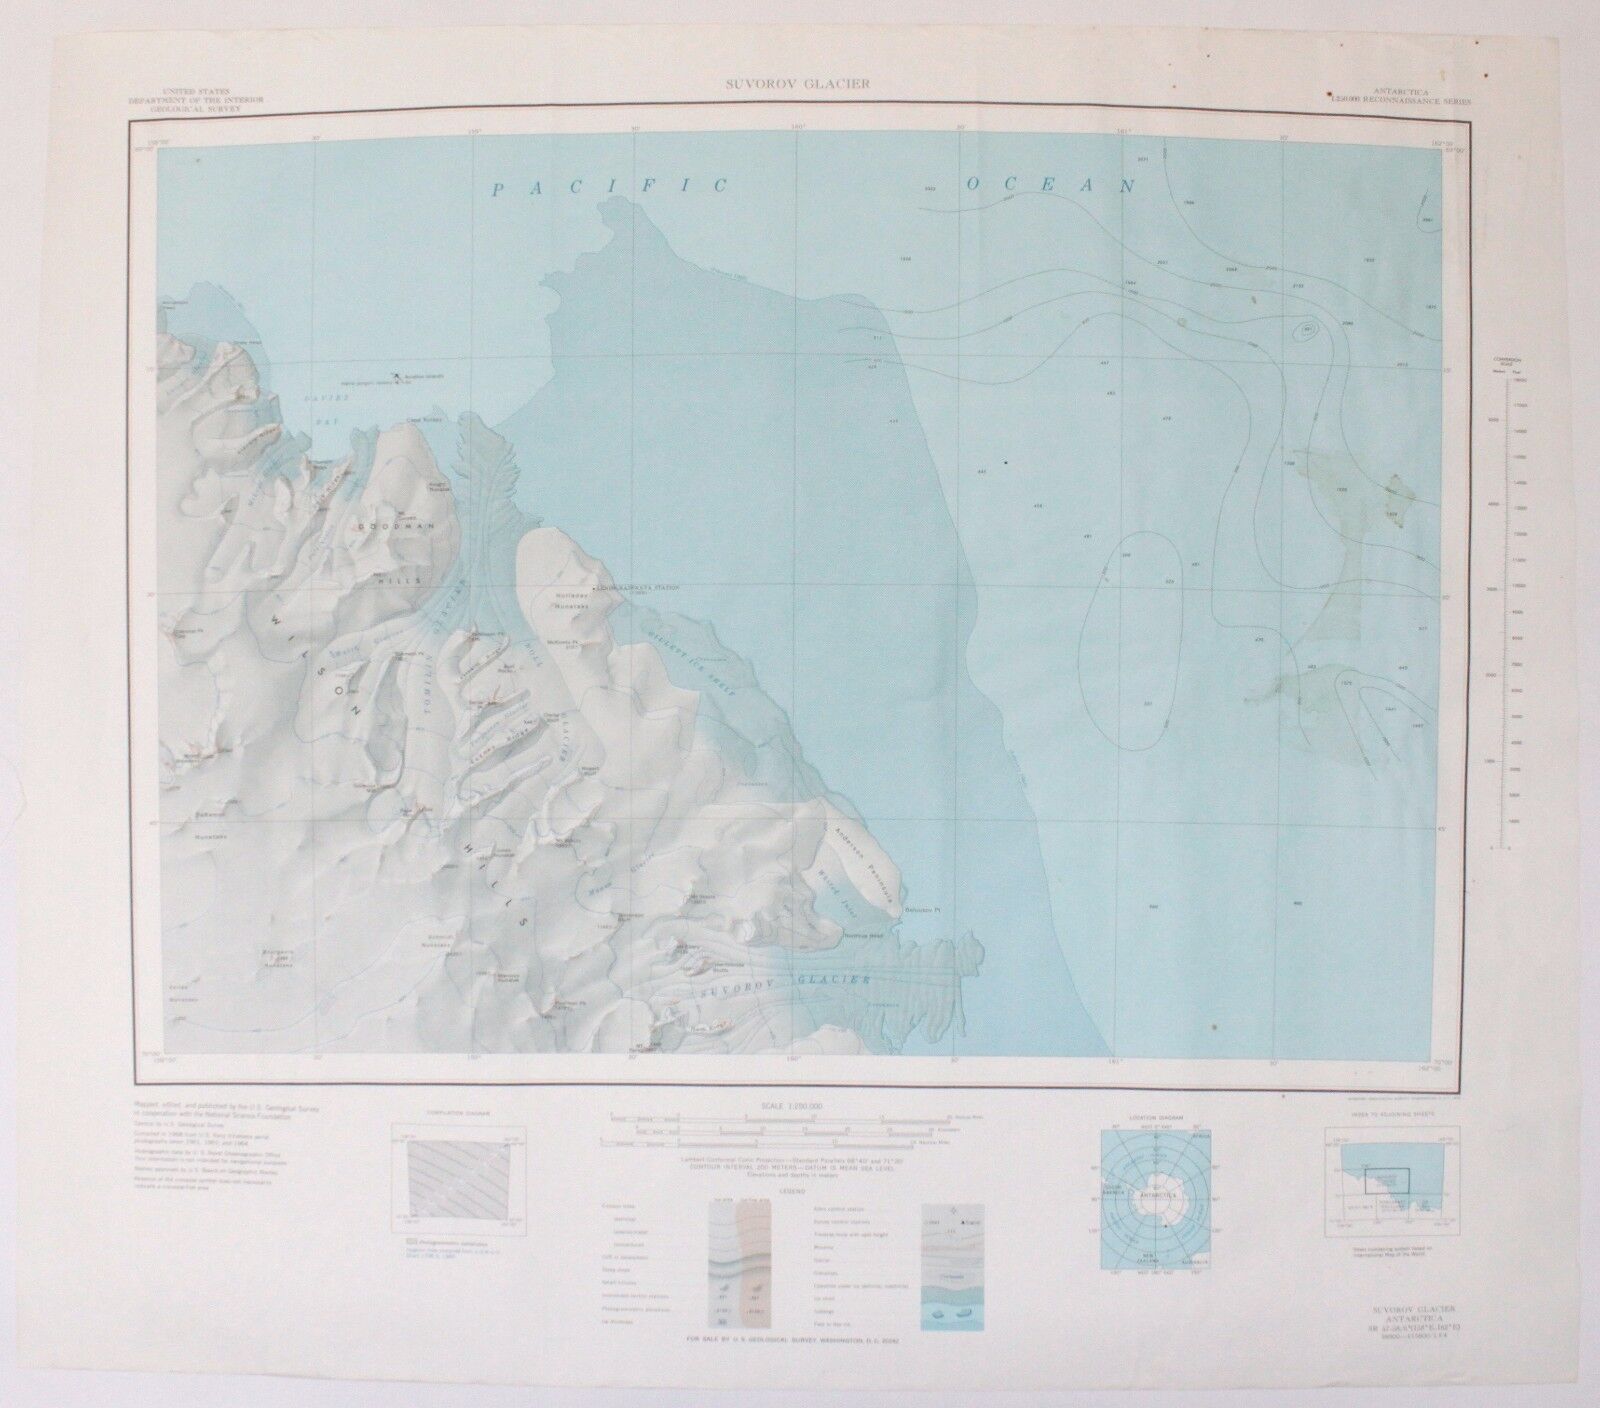 Suvorov Glacier Antarctica Vintage Original USGS National Science Foundation Map